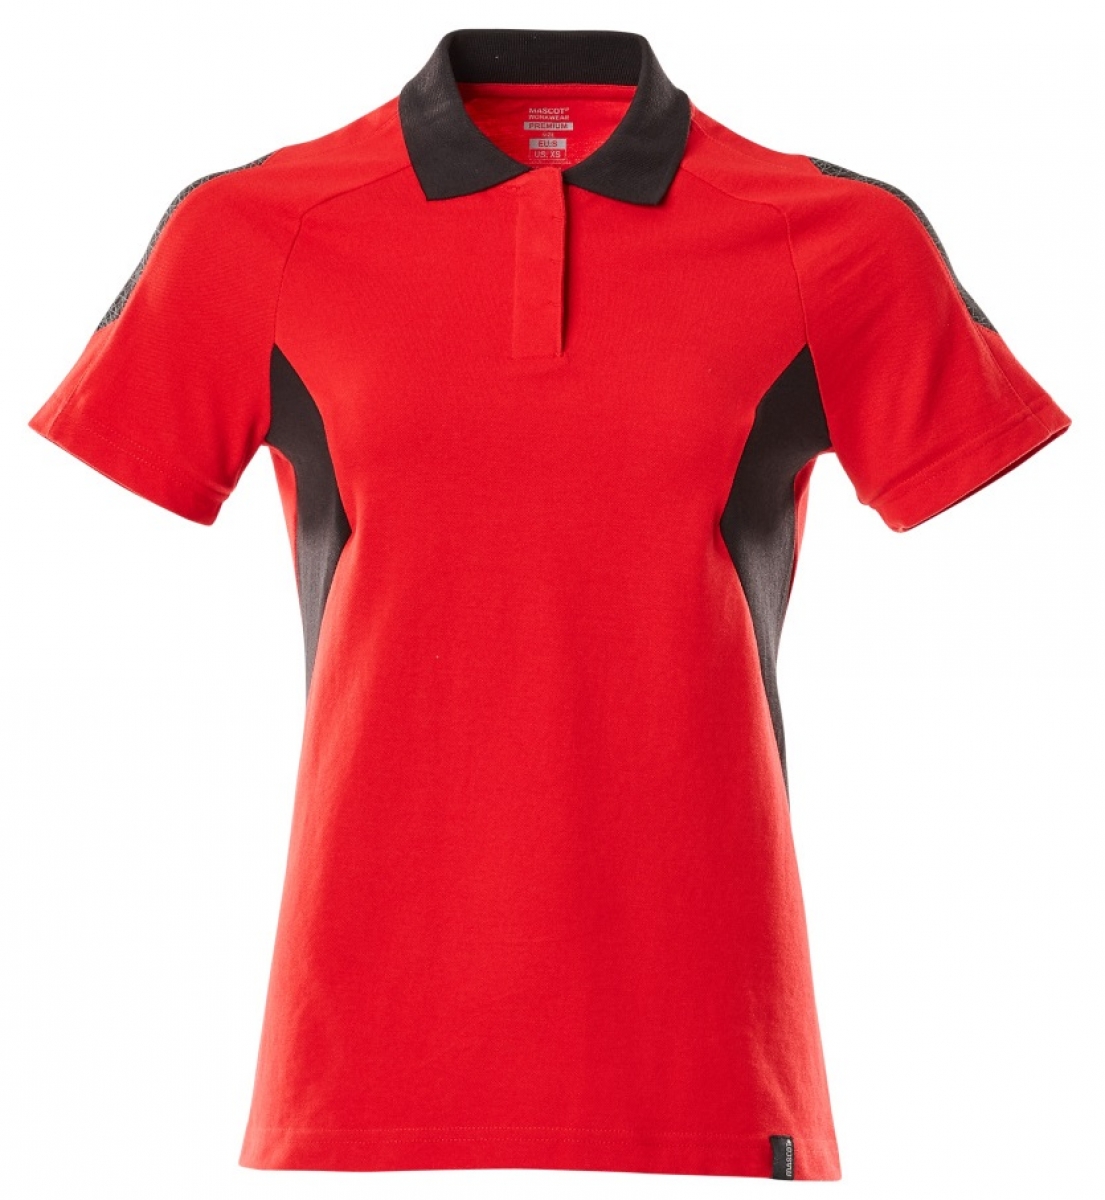 MASCOT-Worker-Shirts, Damen Polo-Shirt, 180 g/m, verkehrsrot/schwarz